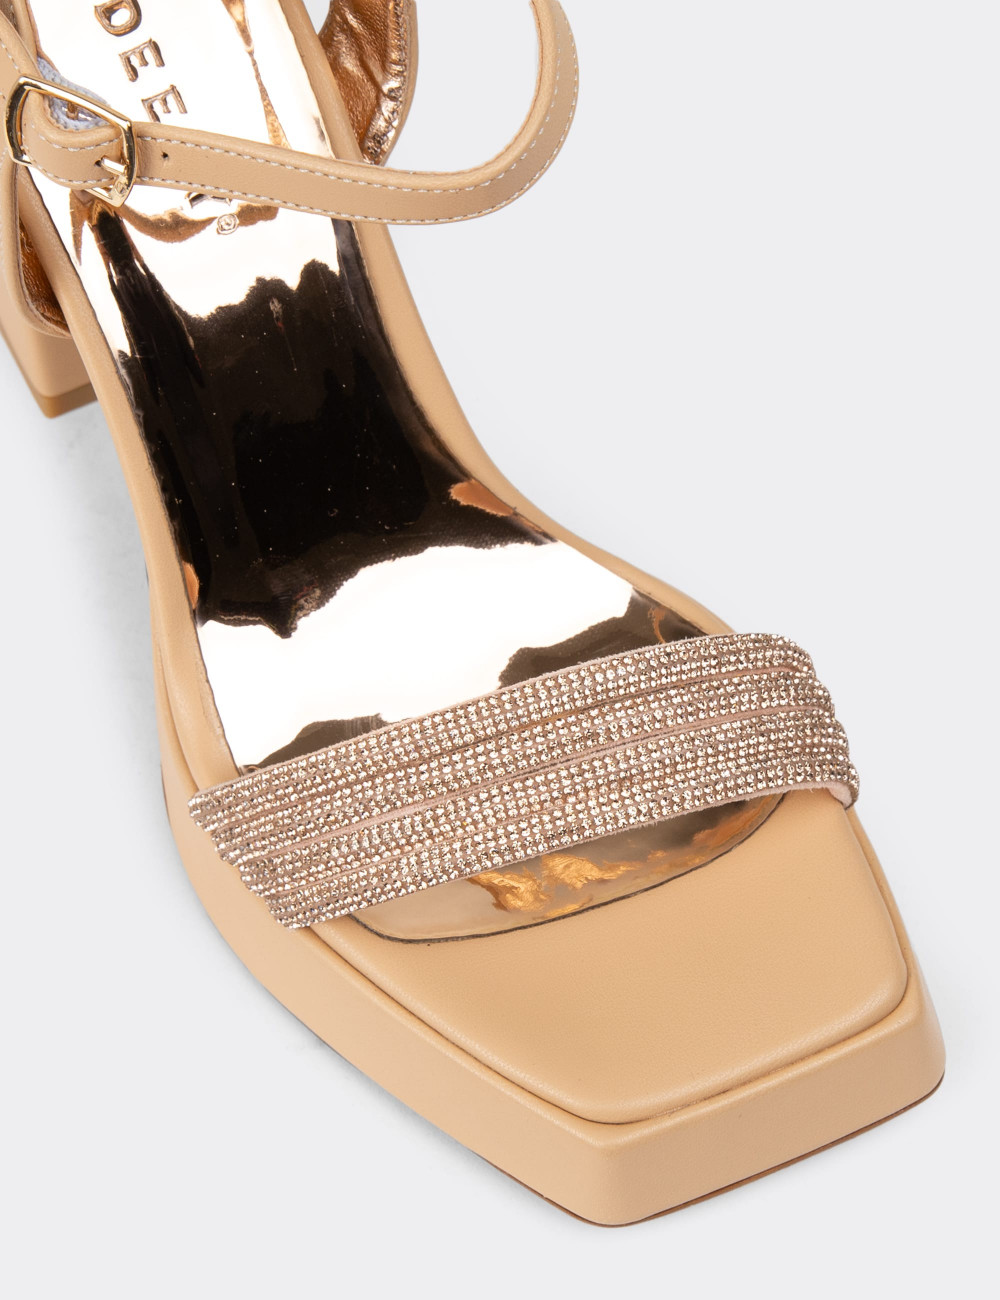 Bej Platform Topuklu Taşlı Kadın Abiye Ayakkabı - K3001ZBEJM01